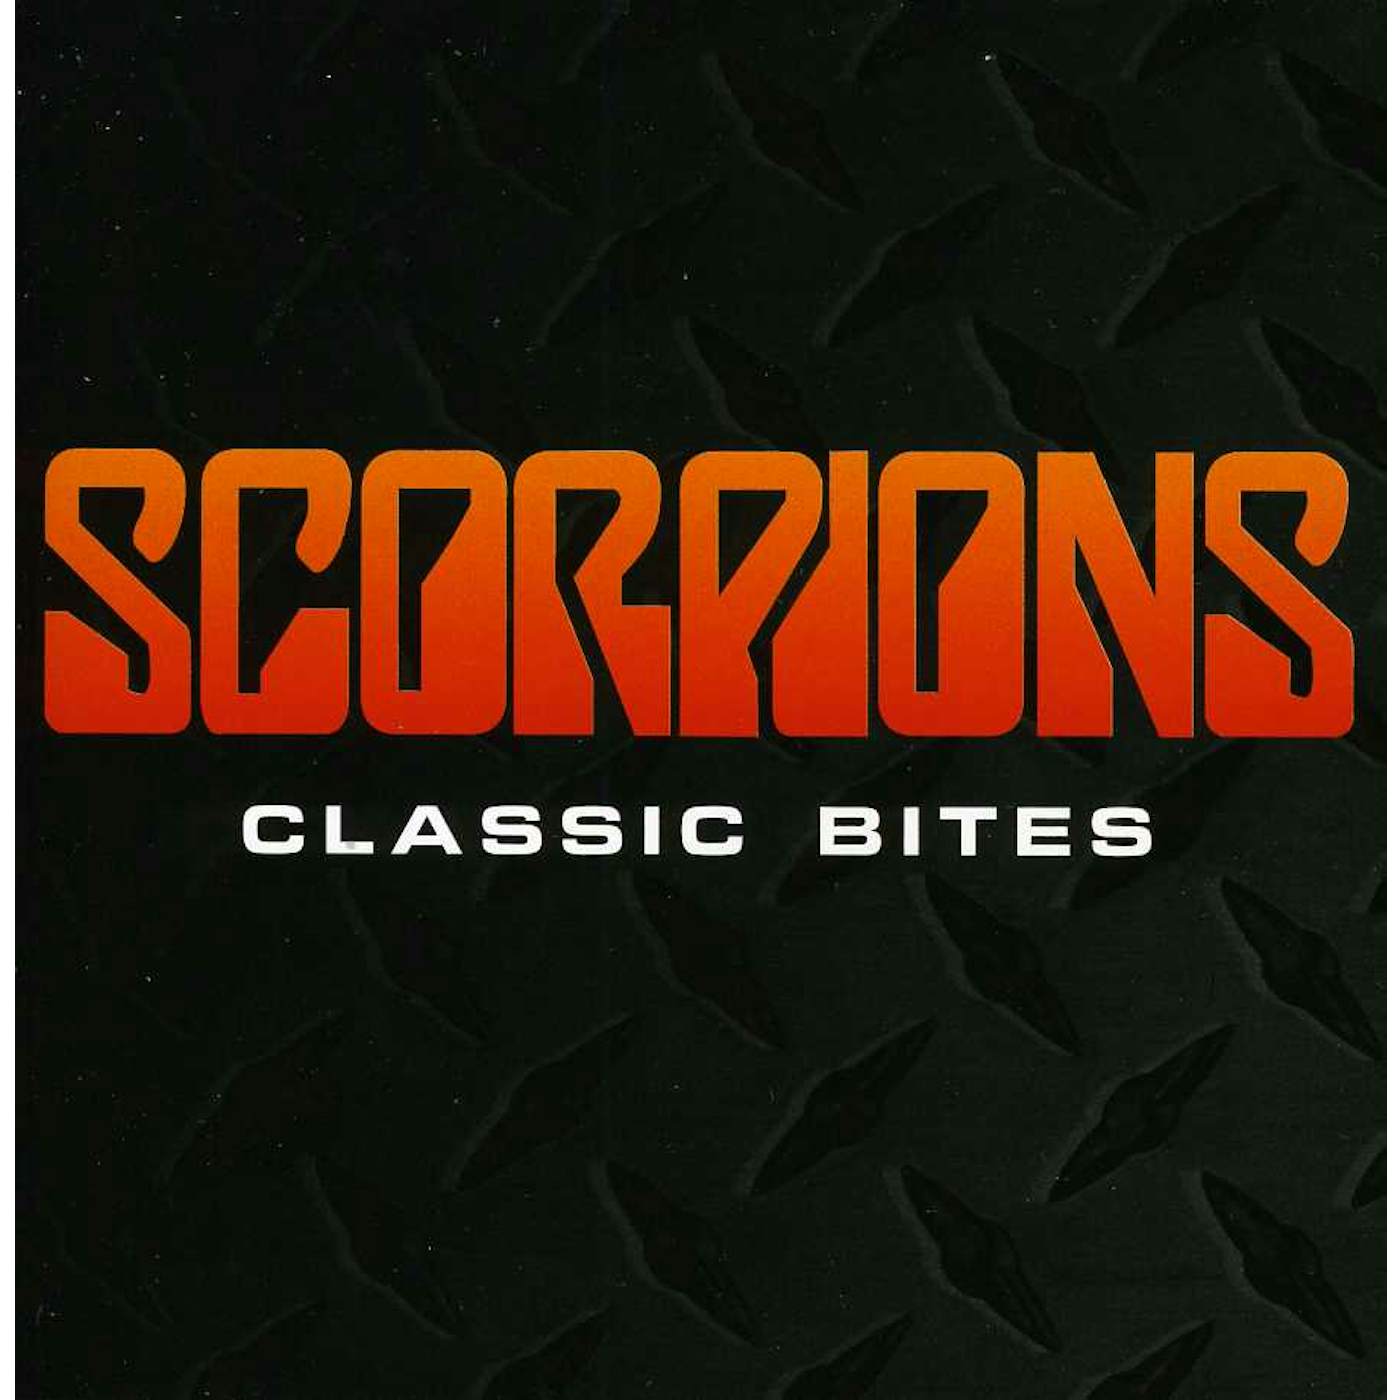 Scorpions CLASSIC BITES CD